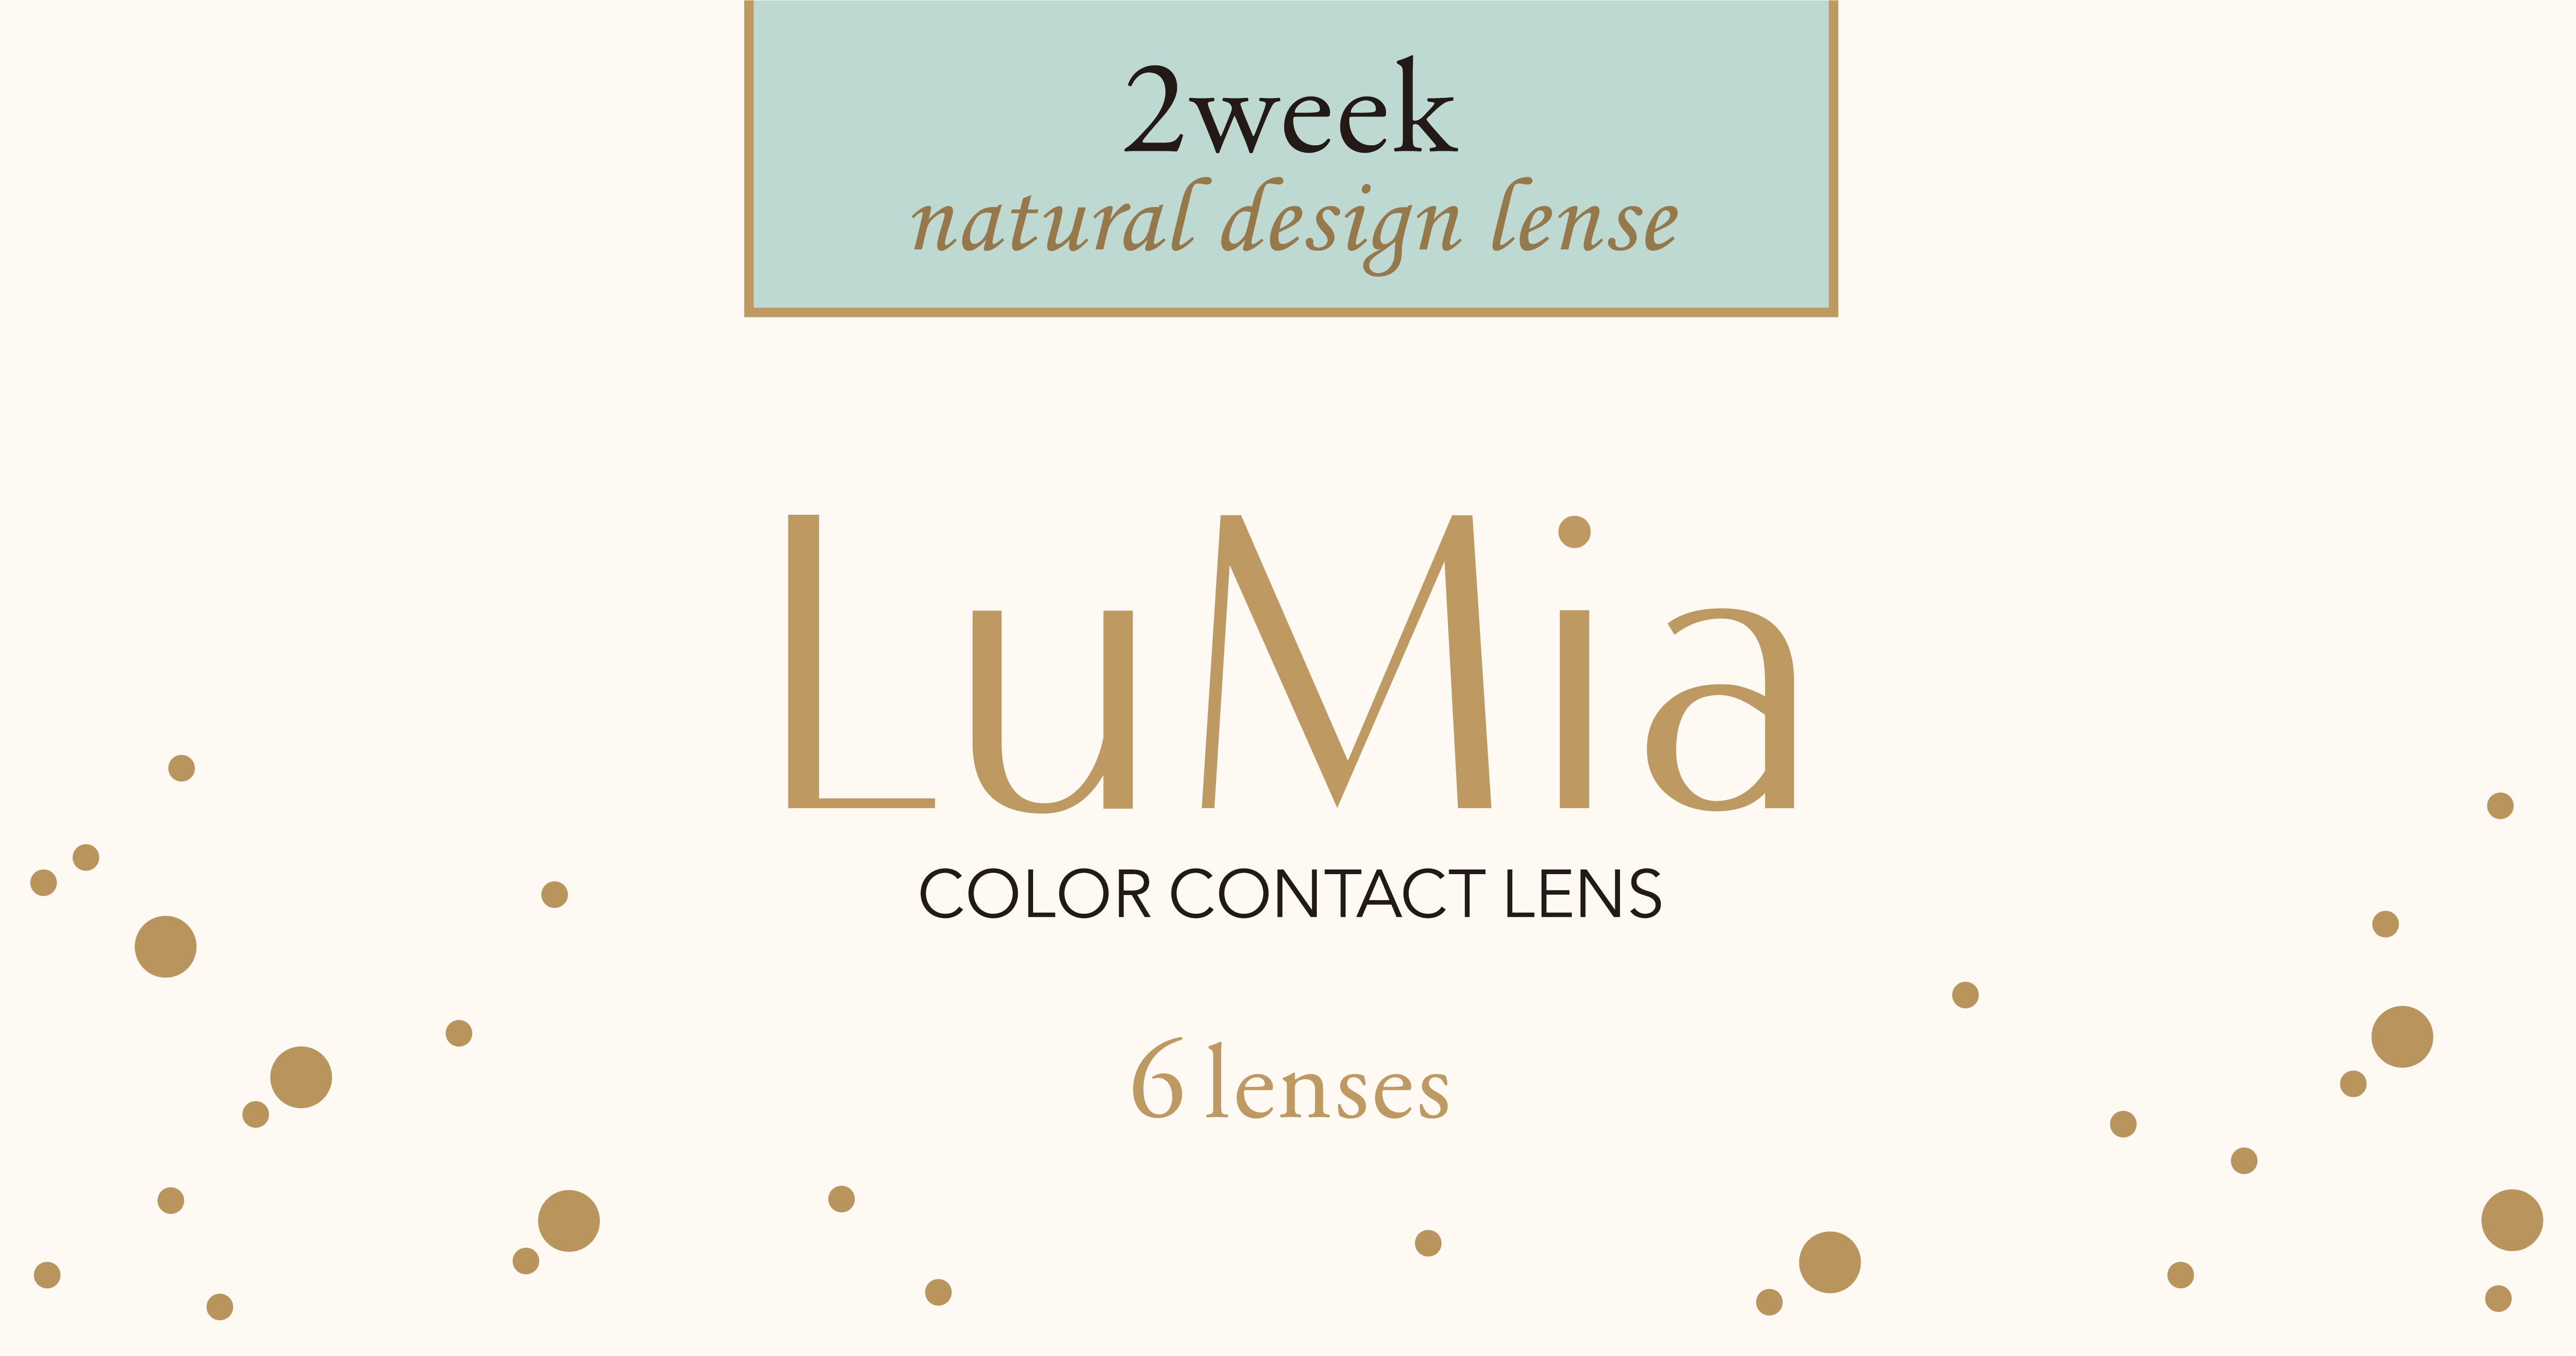 カラーコンタクトレンズ、LuMia ヌーディーブラウン UV | 2weekの追加の参考画像4枚目